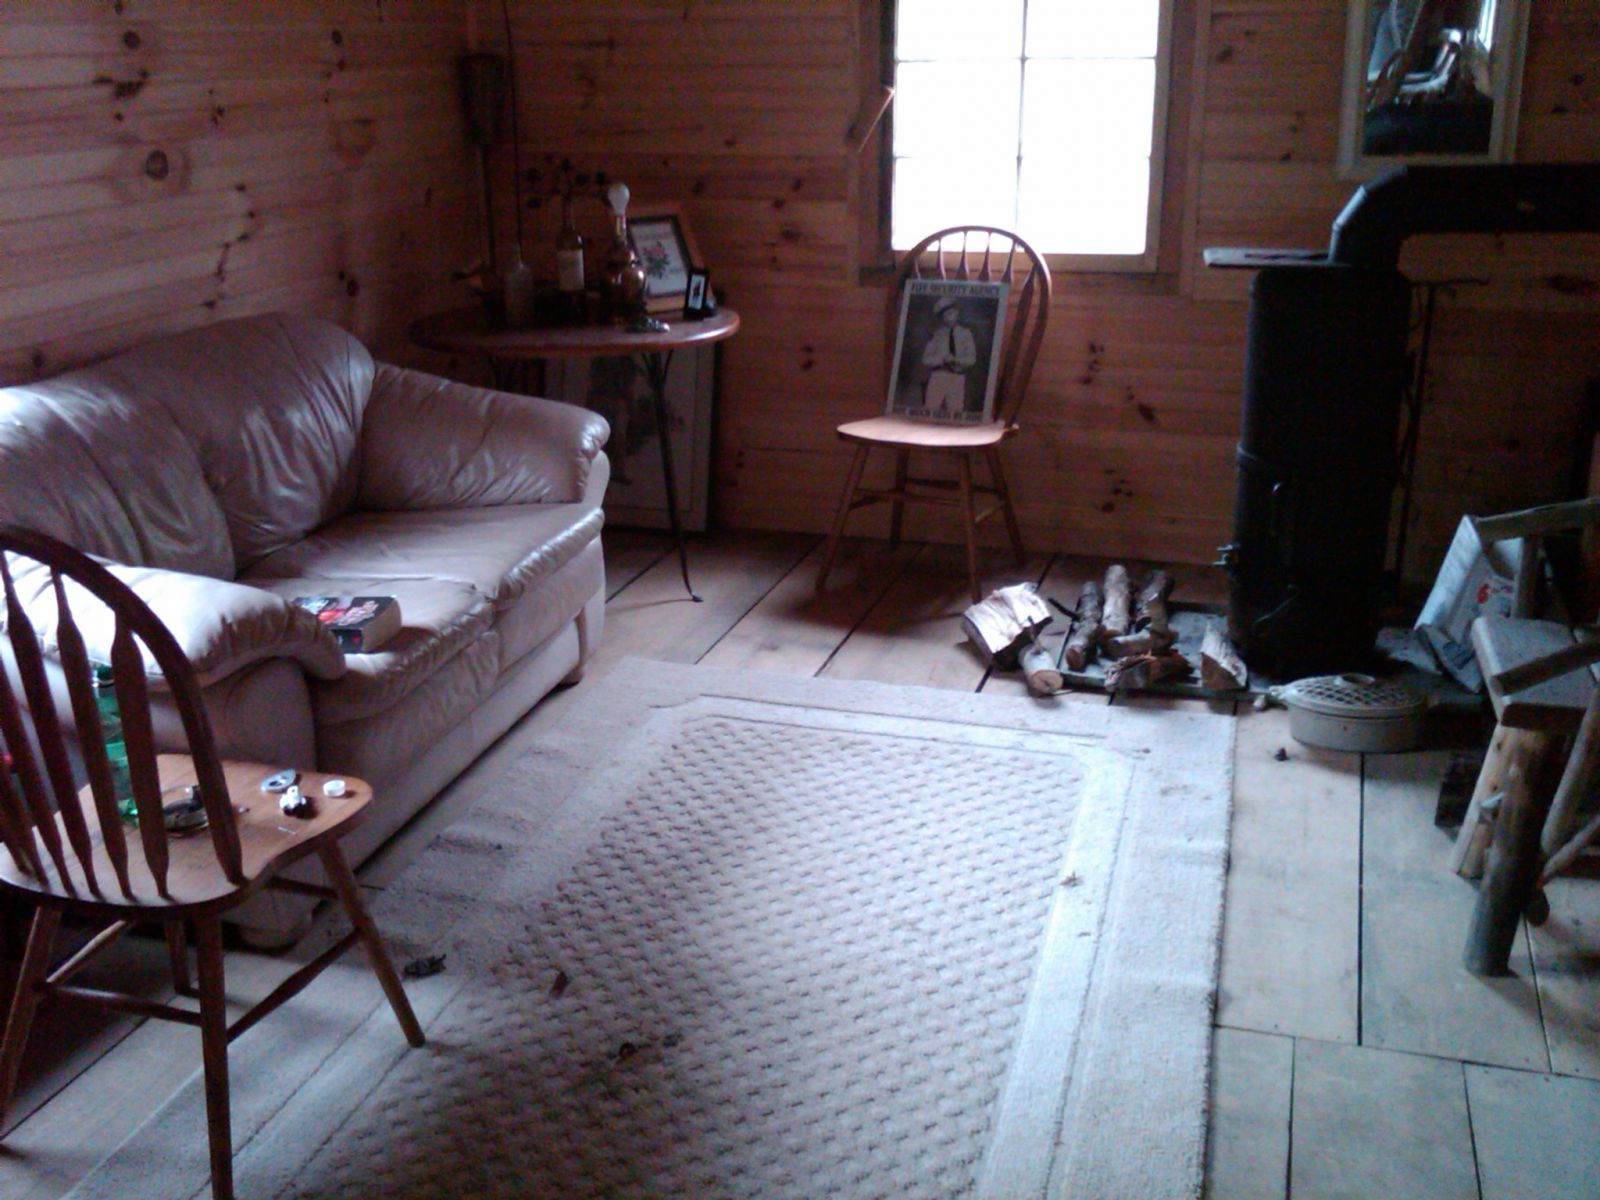 inside cabin